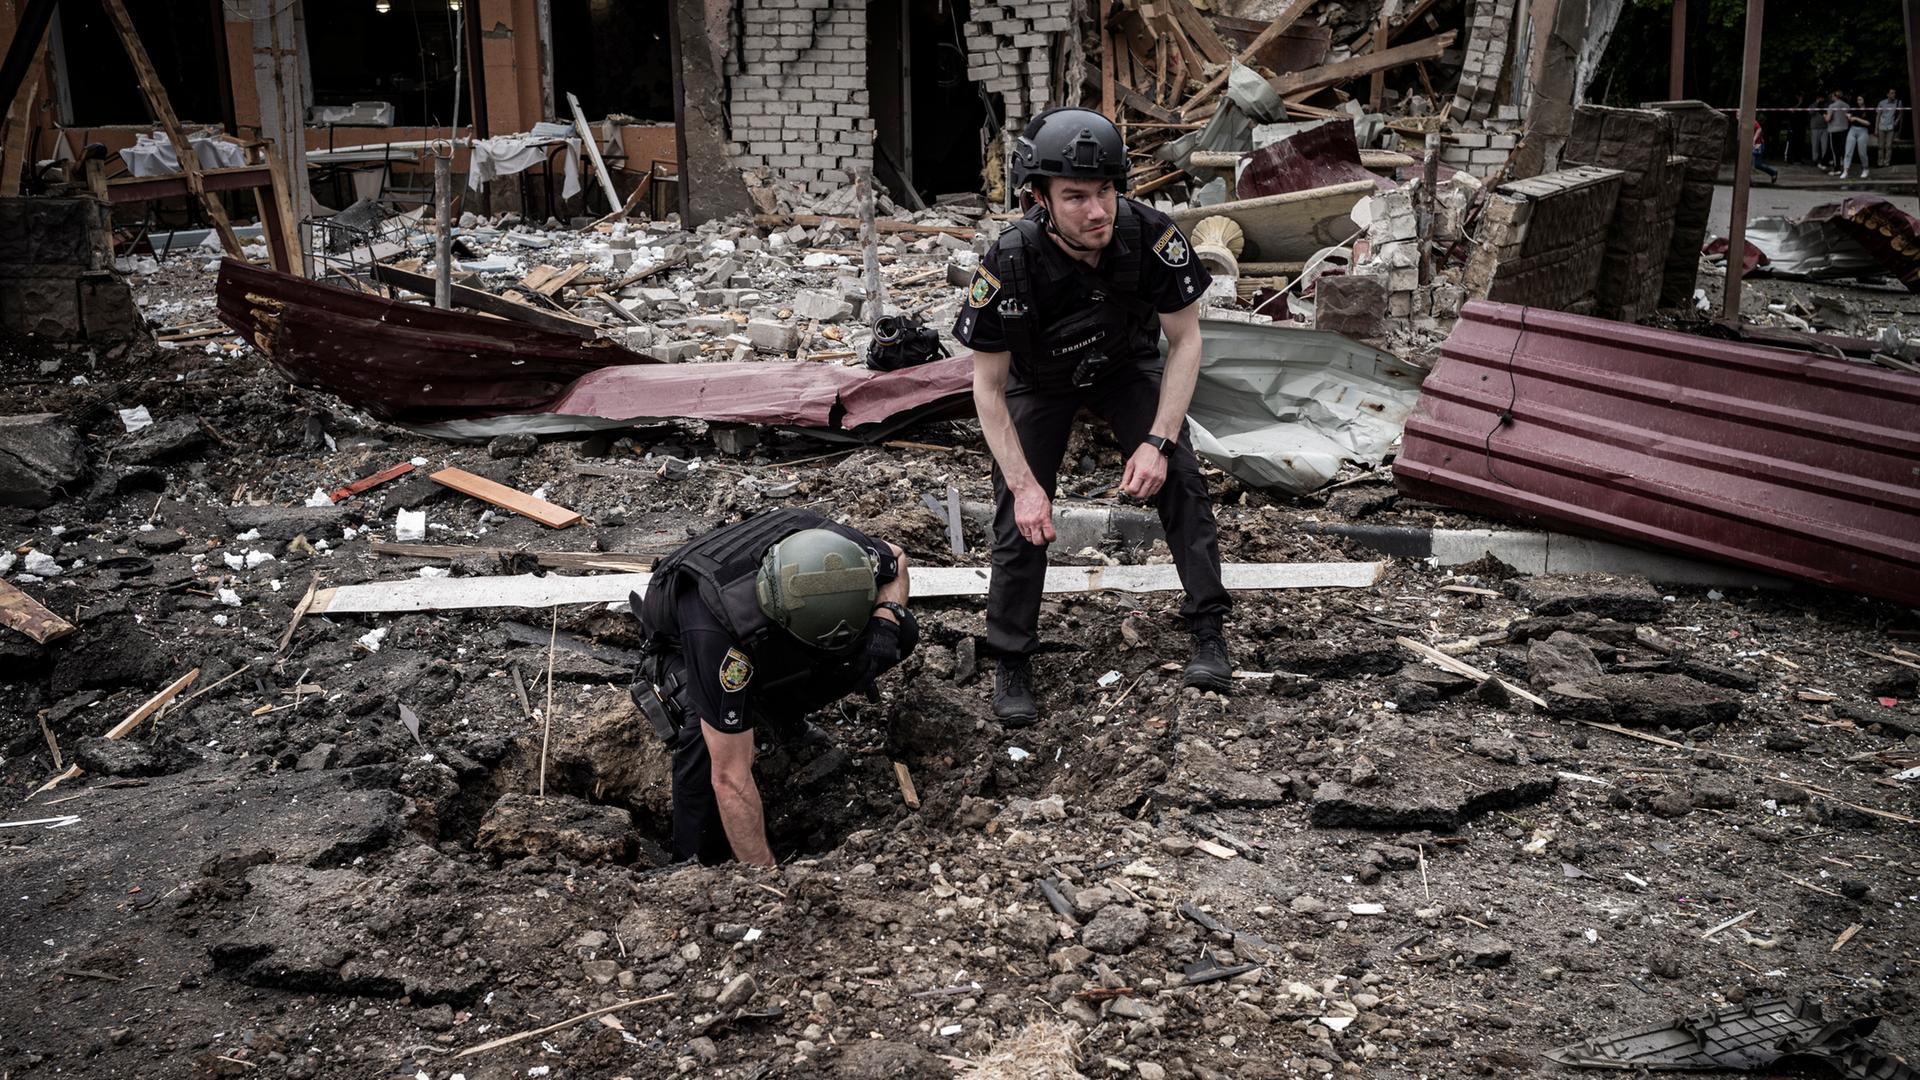 Soldaten inspizieren einen Bombenkrater zwischen Trümmern.